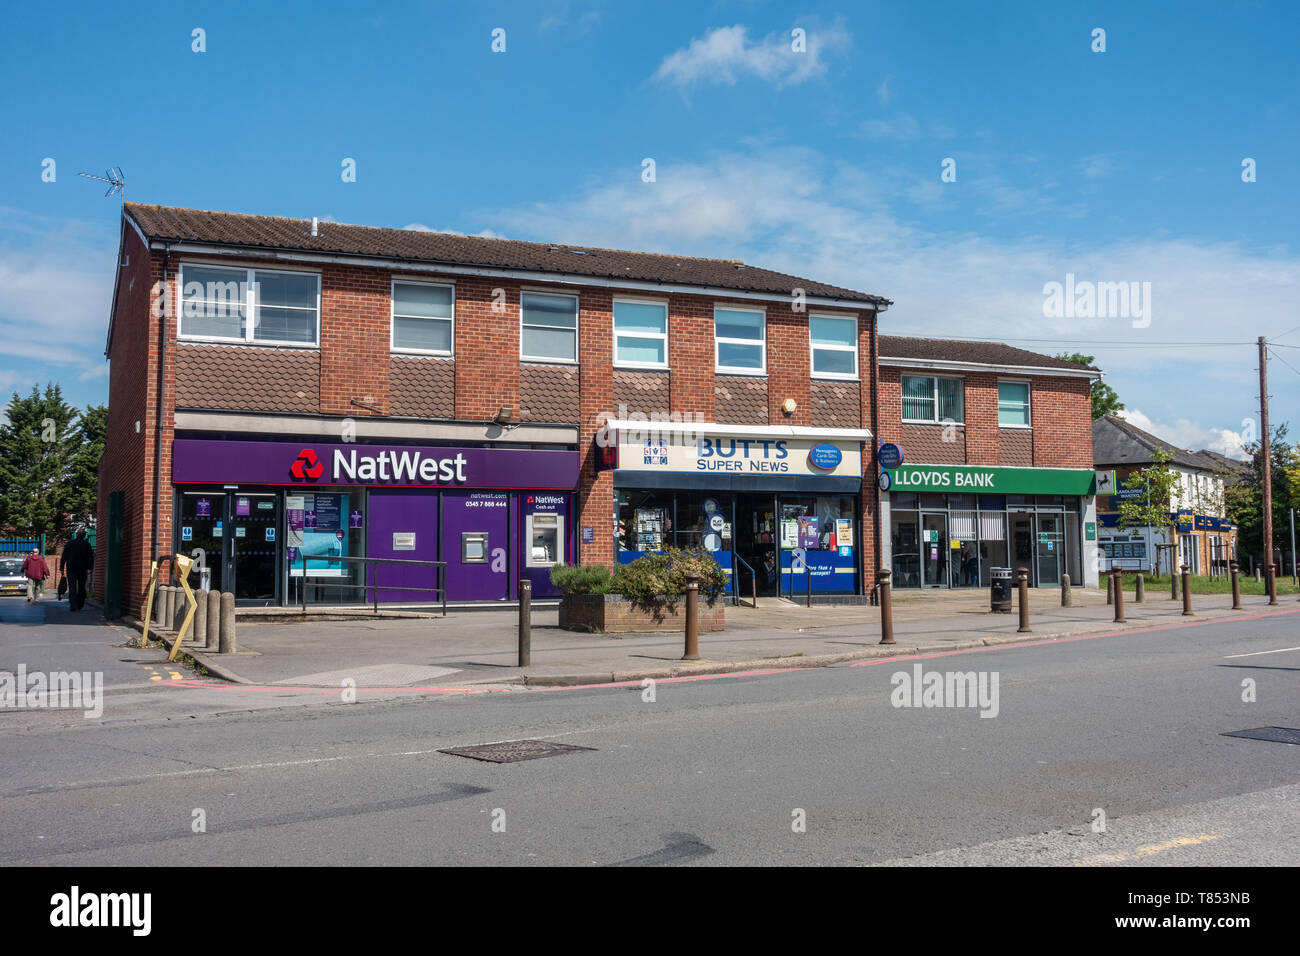 Lloyds e NatWest banche separate da un'edicola di giornali su School Road, Tilehurst, Reading, Regno Unito Foto Stock